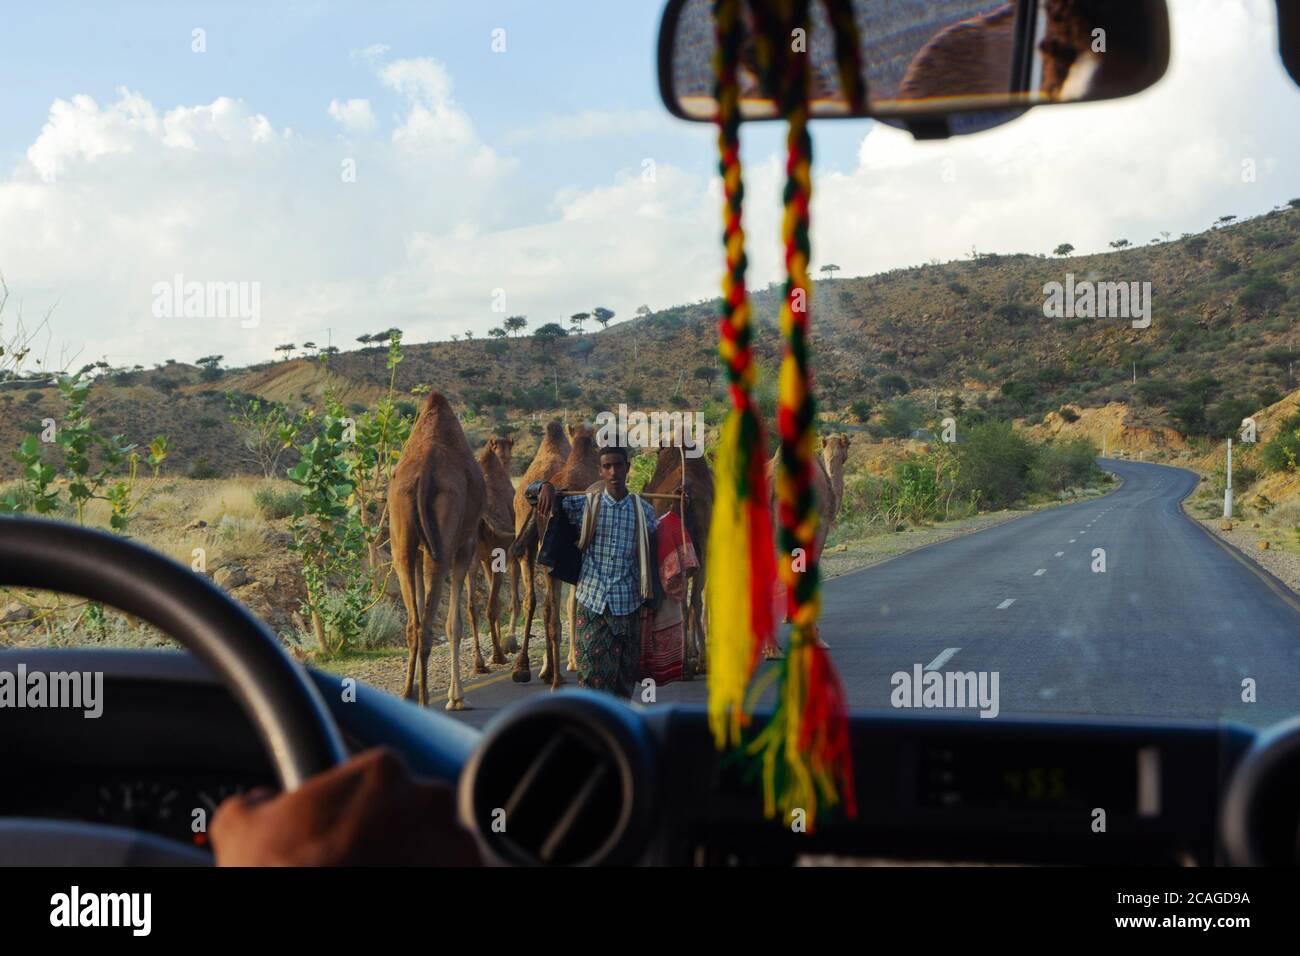 Aksum, Ethiopie - novembre 2018: Conduite à travers l'Ethiopie rurale et troupeau de chameaux en itinérance sur la route Banque D'Images